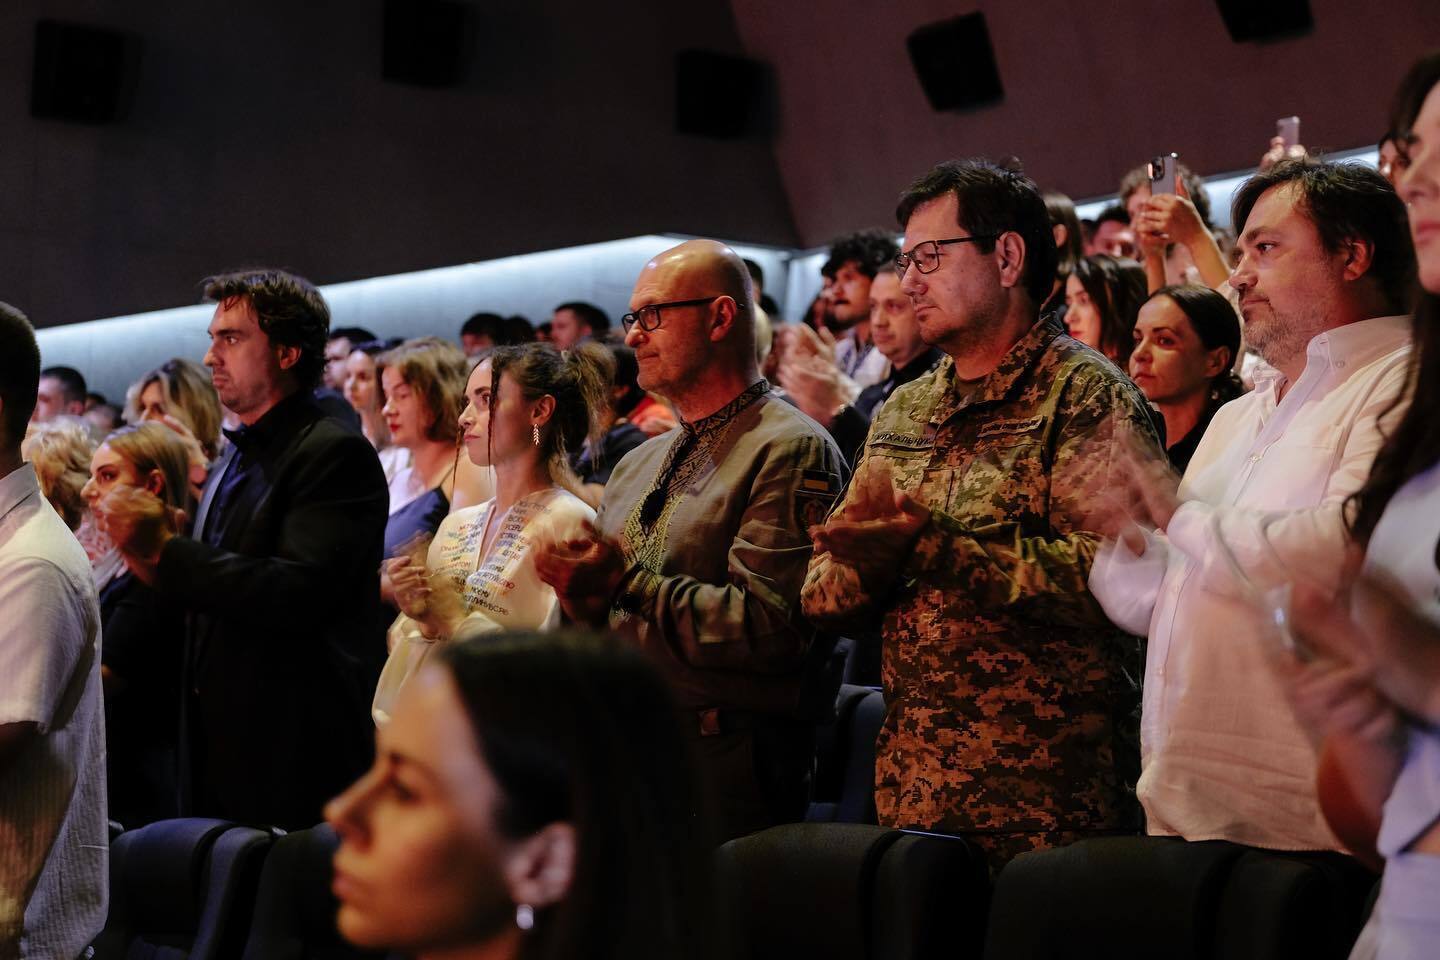 Одеський міжнародний кінофестиваль розпочався з хвилини мовчання: чим відрізняється цьогорічний кінозахід і де він проходить